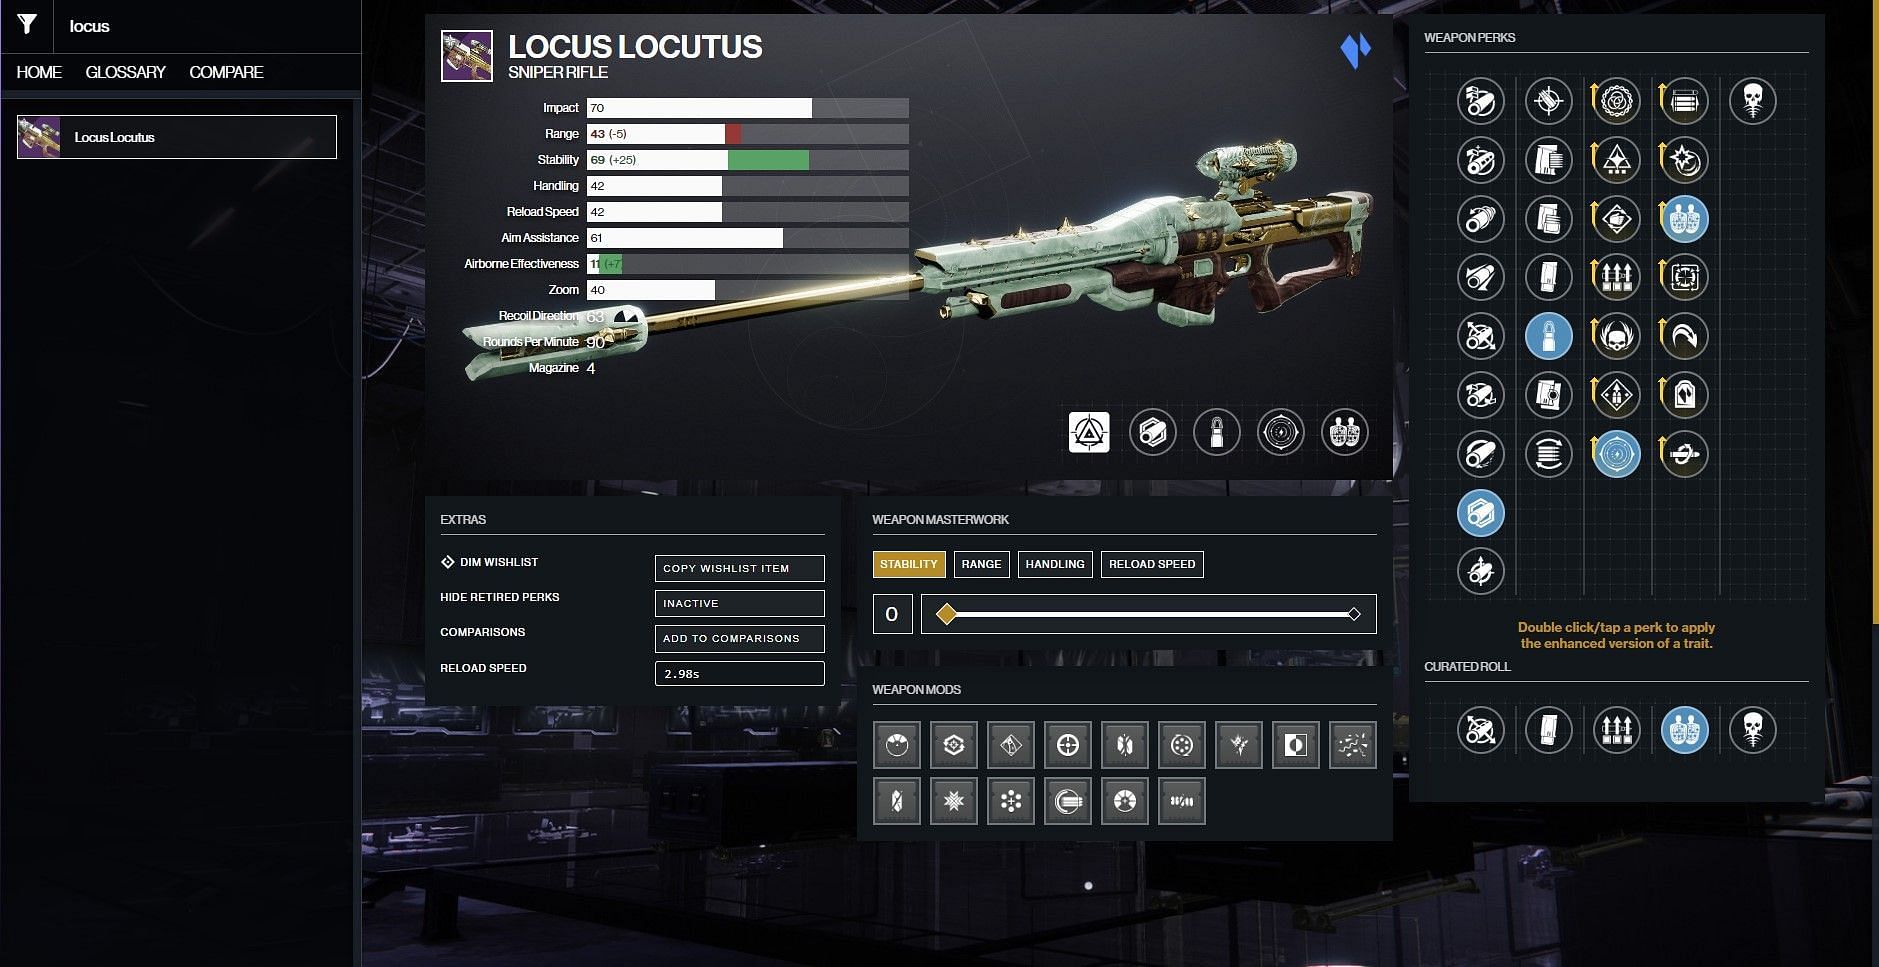 Locus Locutus Sniper Rifle in PvE (Image via D2Gunsmith)